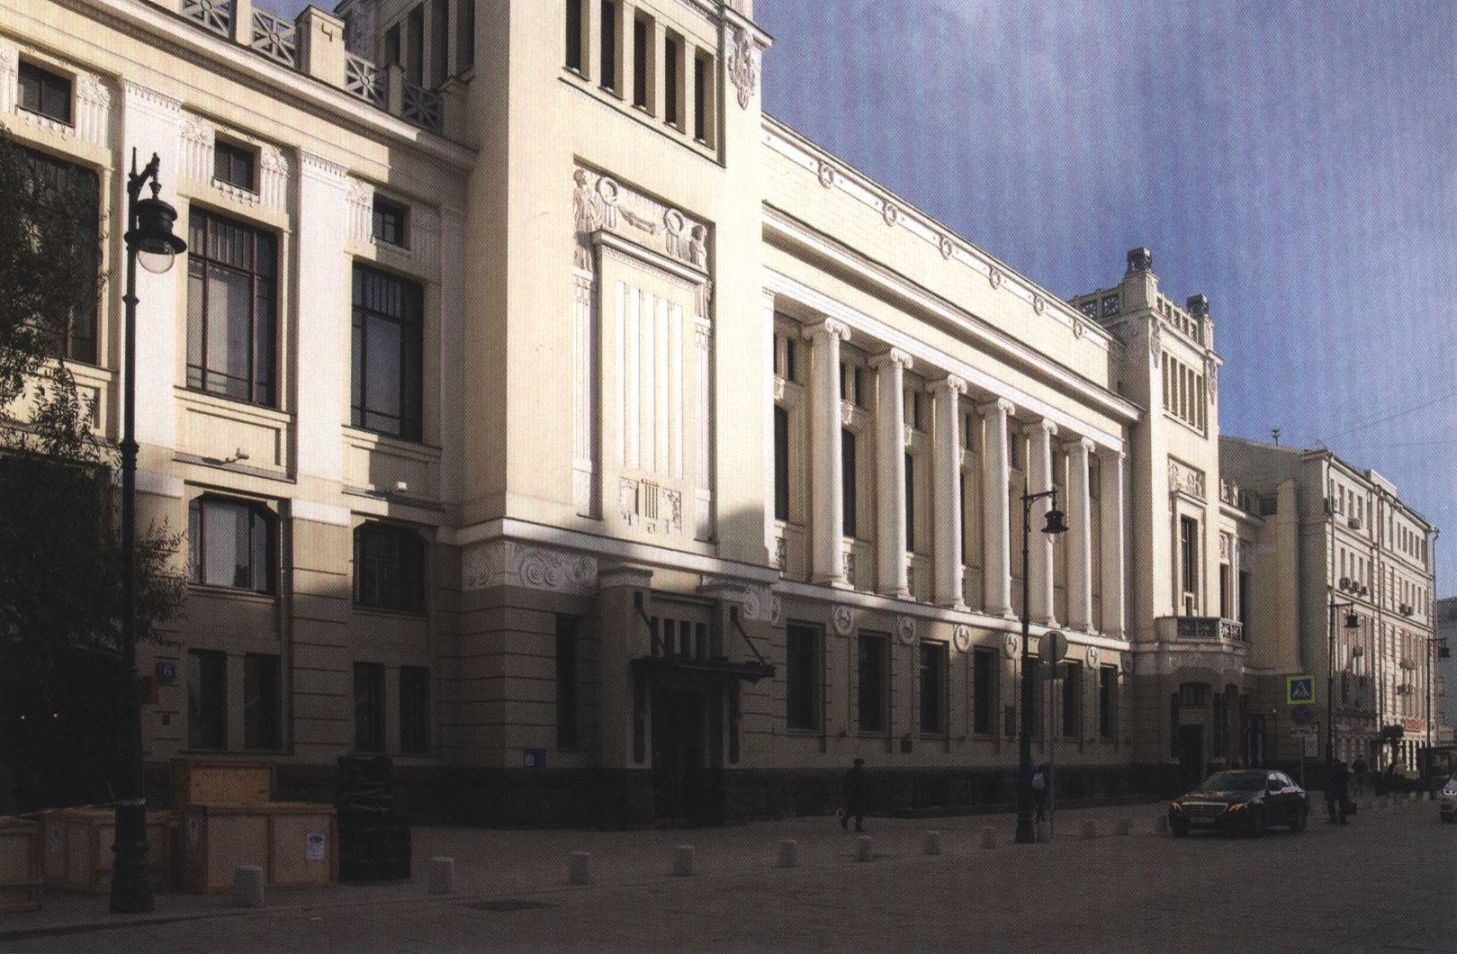 Улица Малая Дмитровка, дом 6. 2016 г. В 1933 году здесь размещался Театр рабочей молодежи (ТРАМ). В 1938-м он был преобразован в Театр имени Ленинского комсомола, с 1990 года носит название «Ленком»